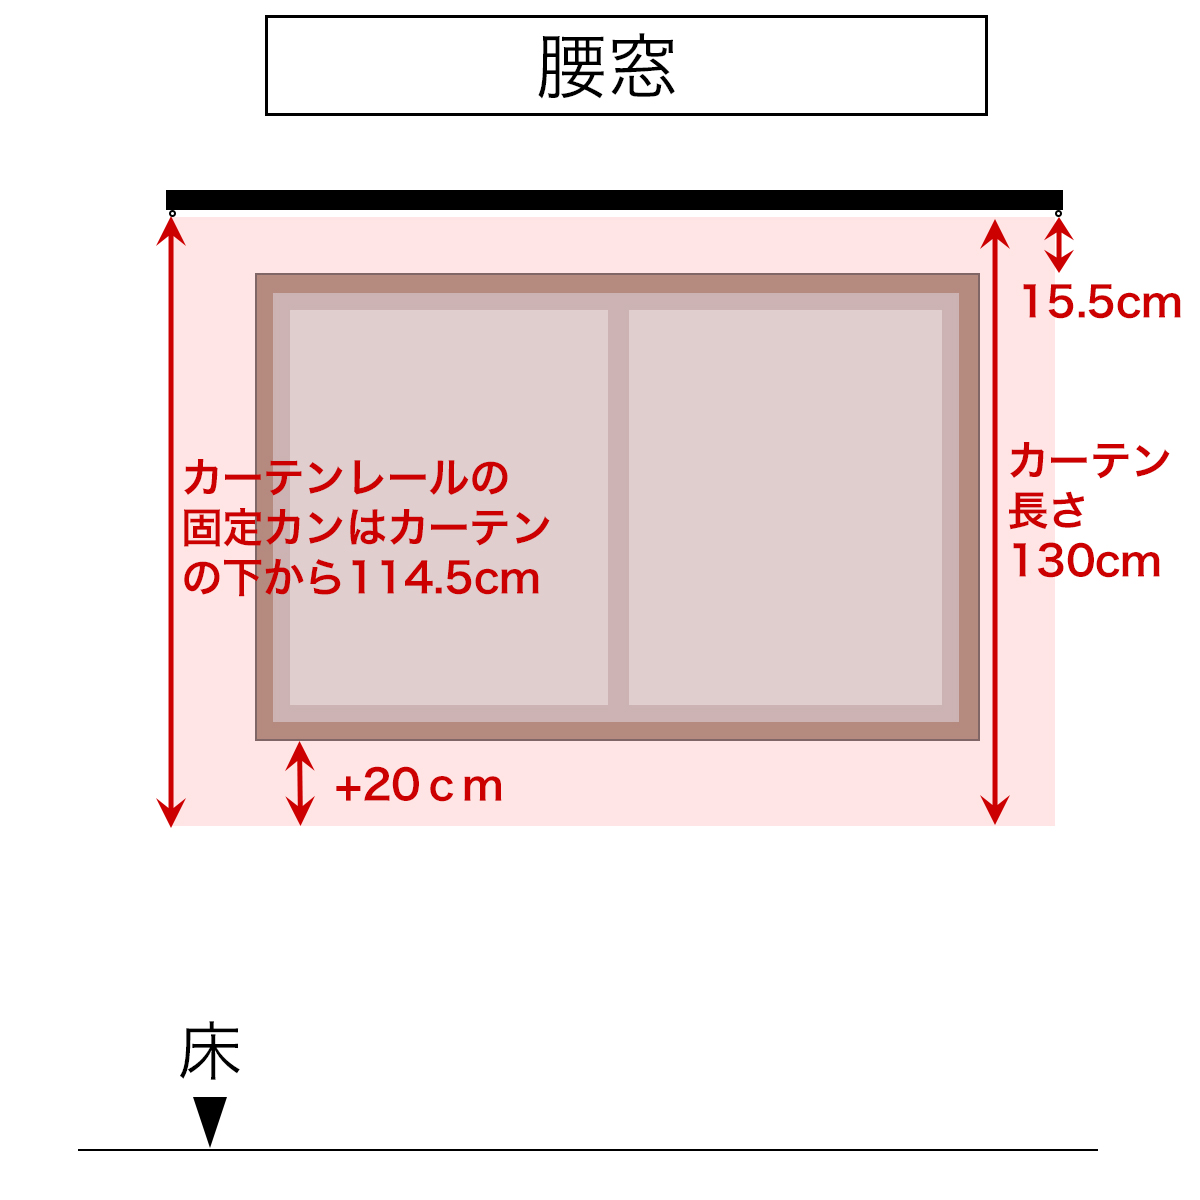 腰窓のカーテンレールの取り付け位置(高さ)